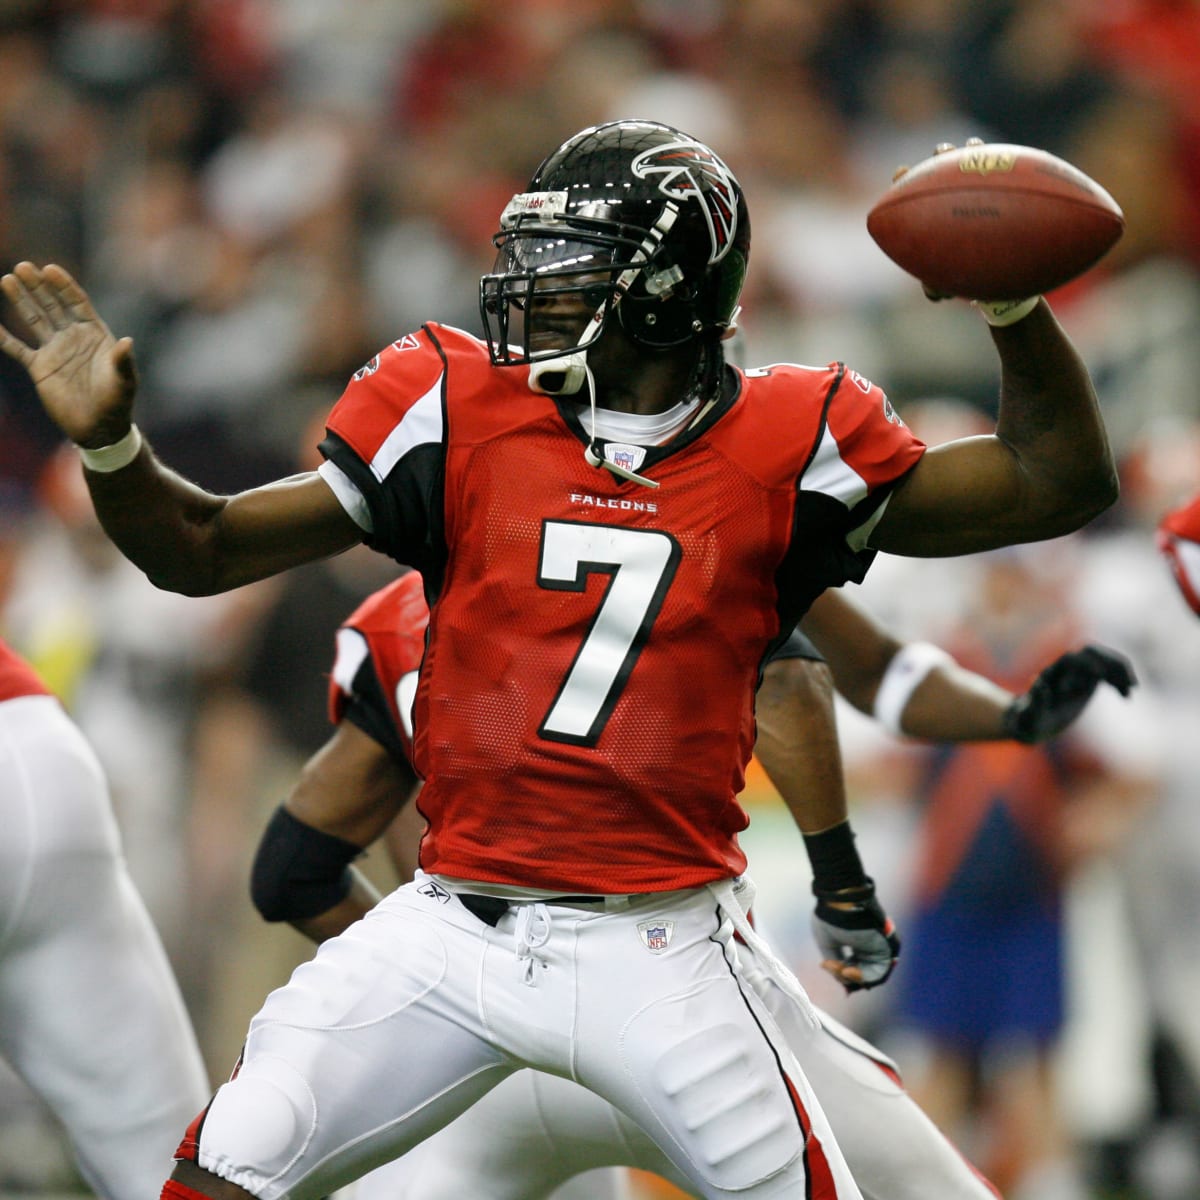 Falcons quarterback Michael Vick has given the NFL a jolt - Sports